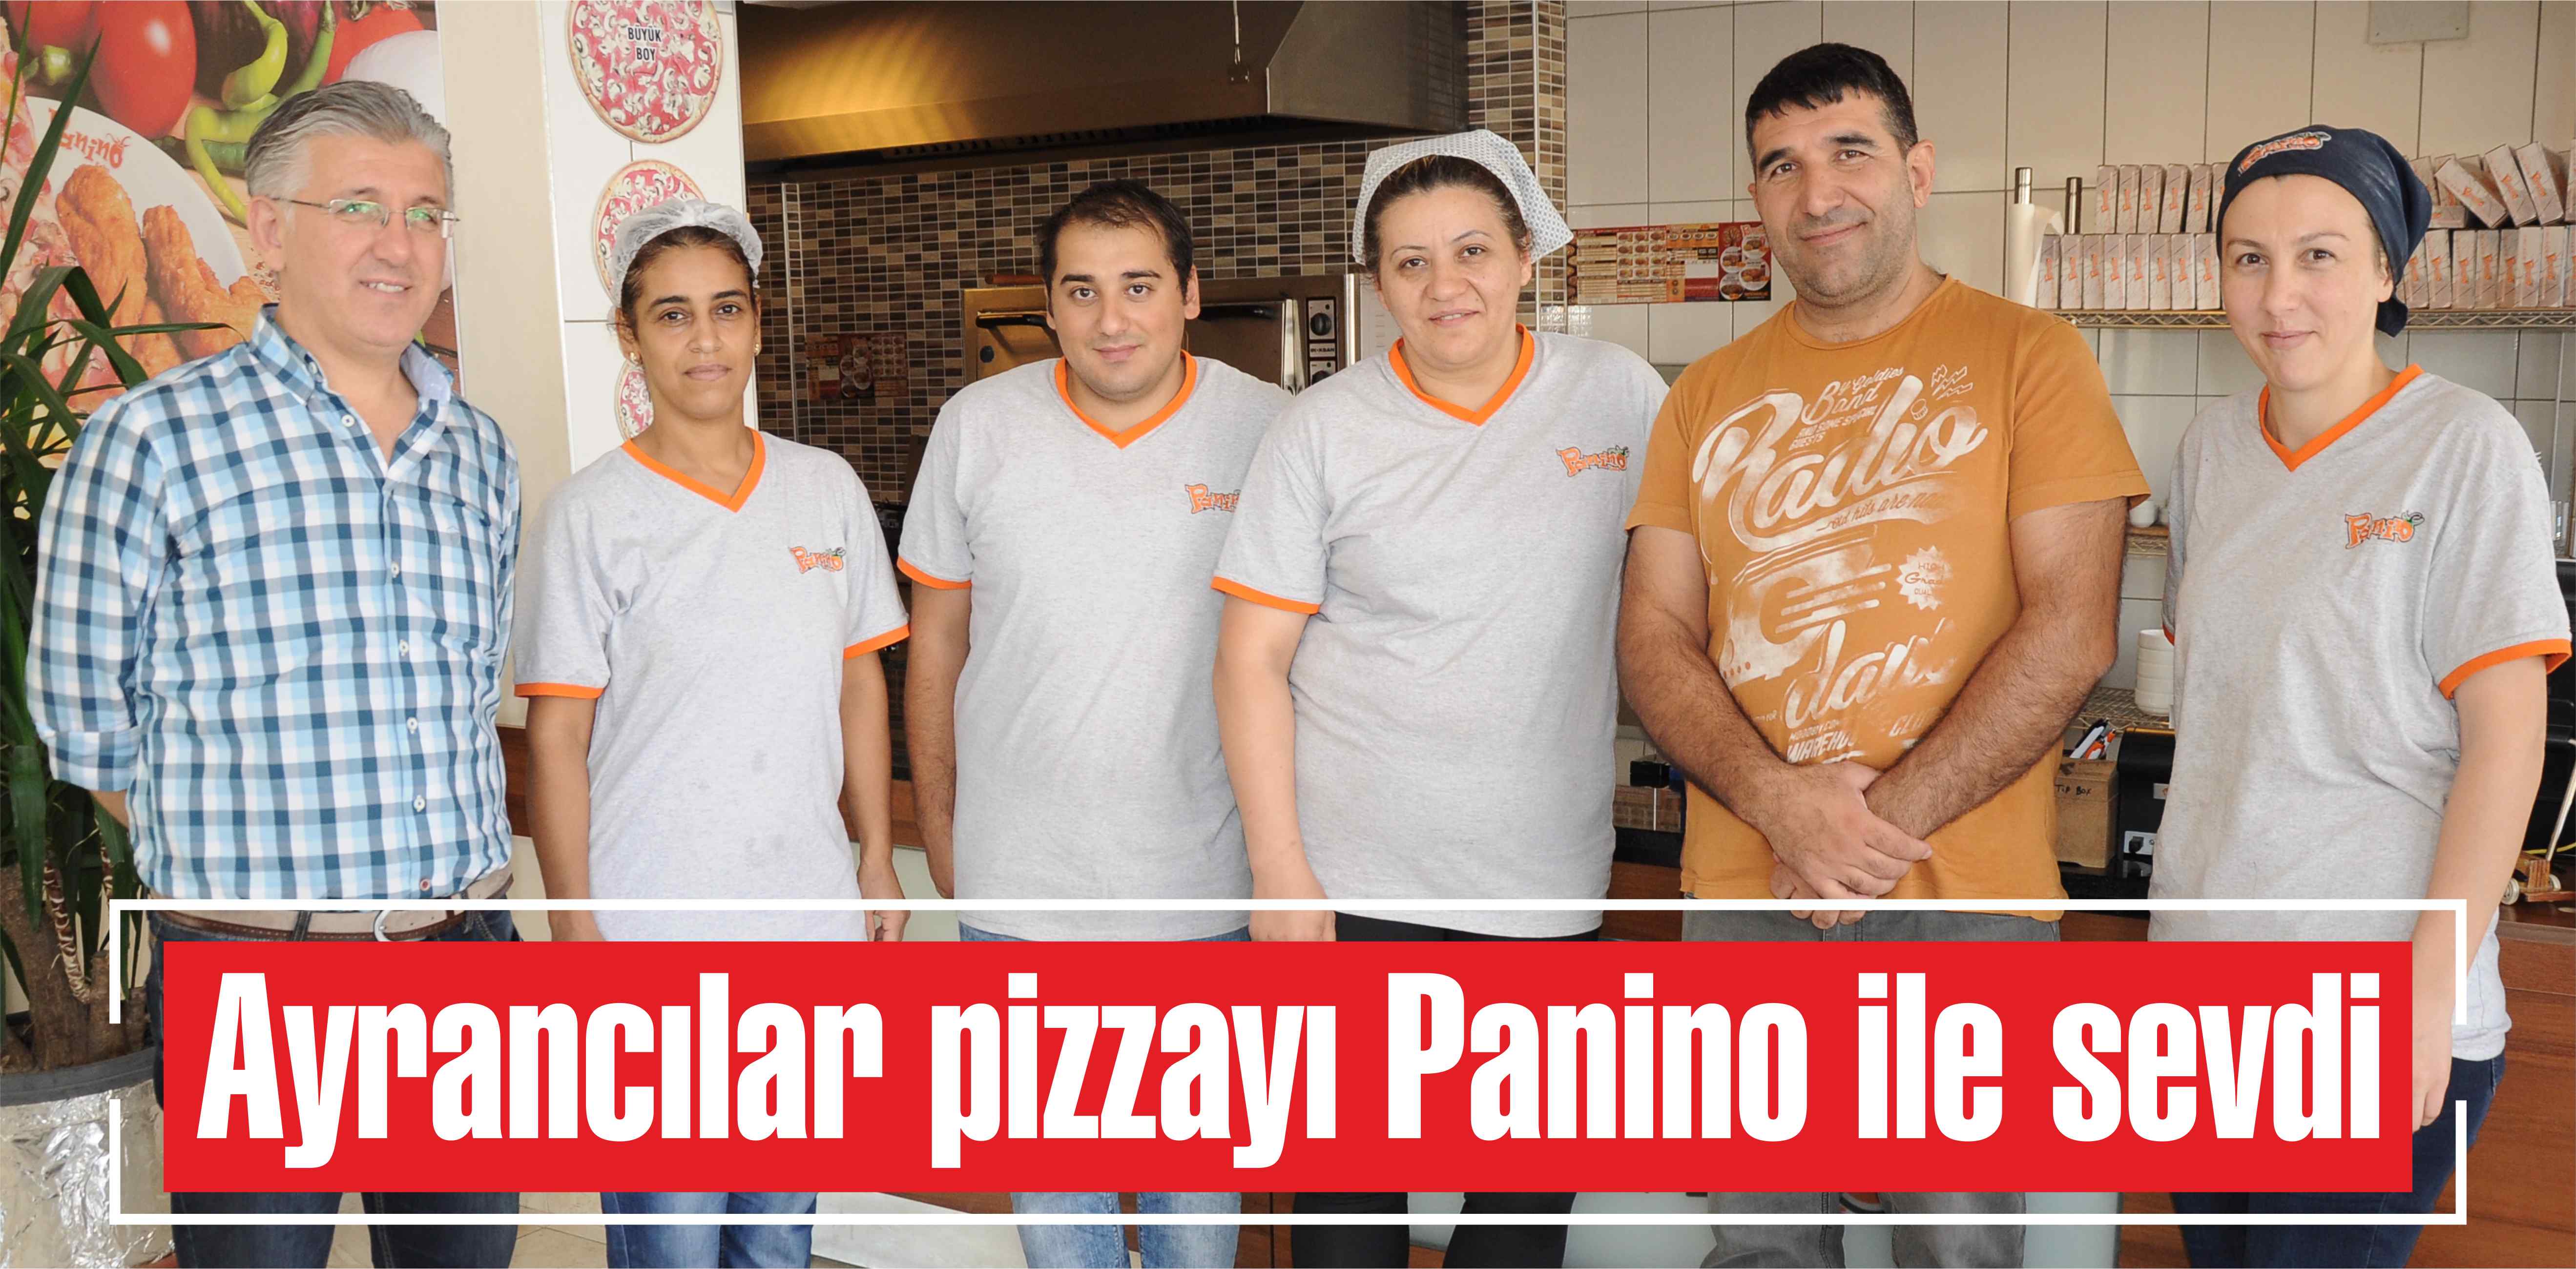 Ayrancılar pizzayı Panino ile sevdi